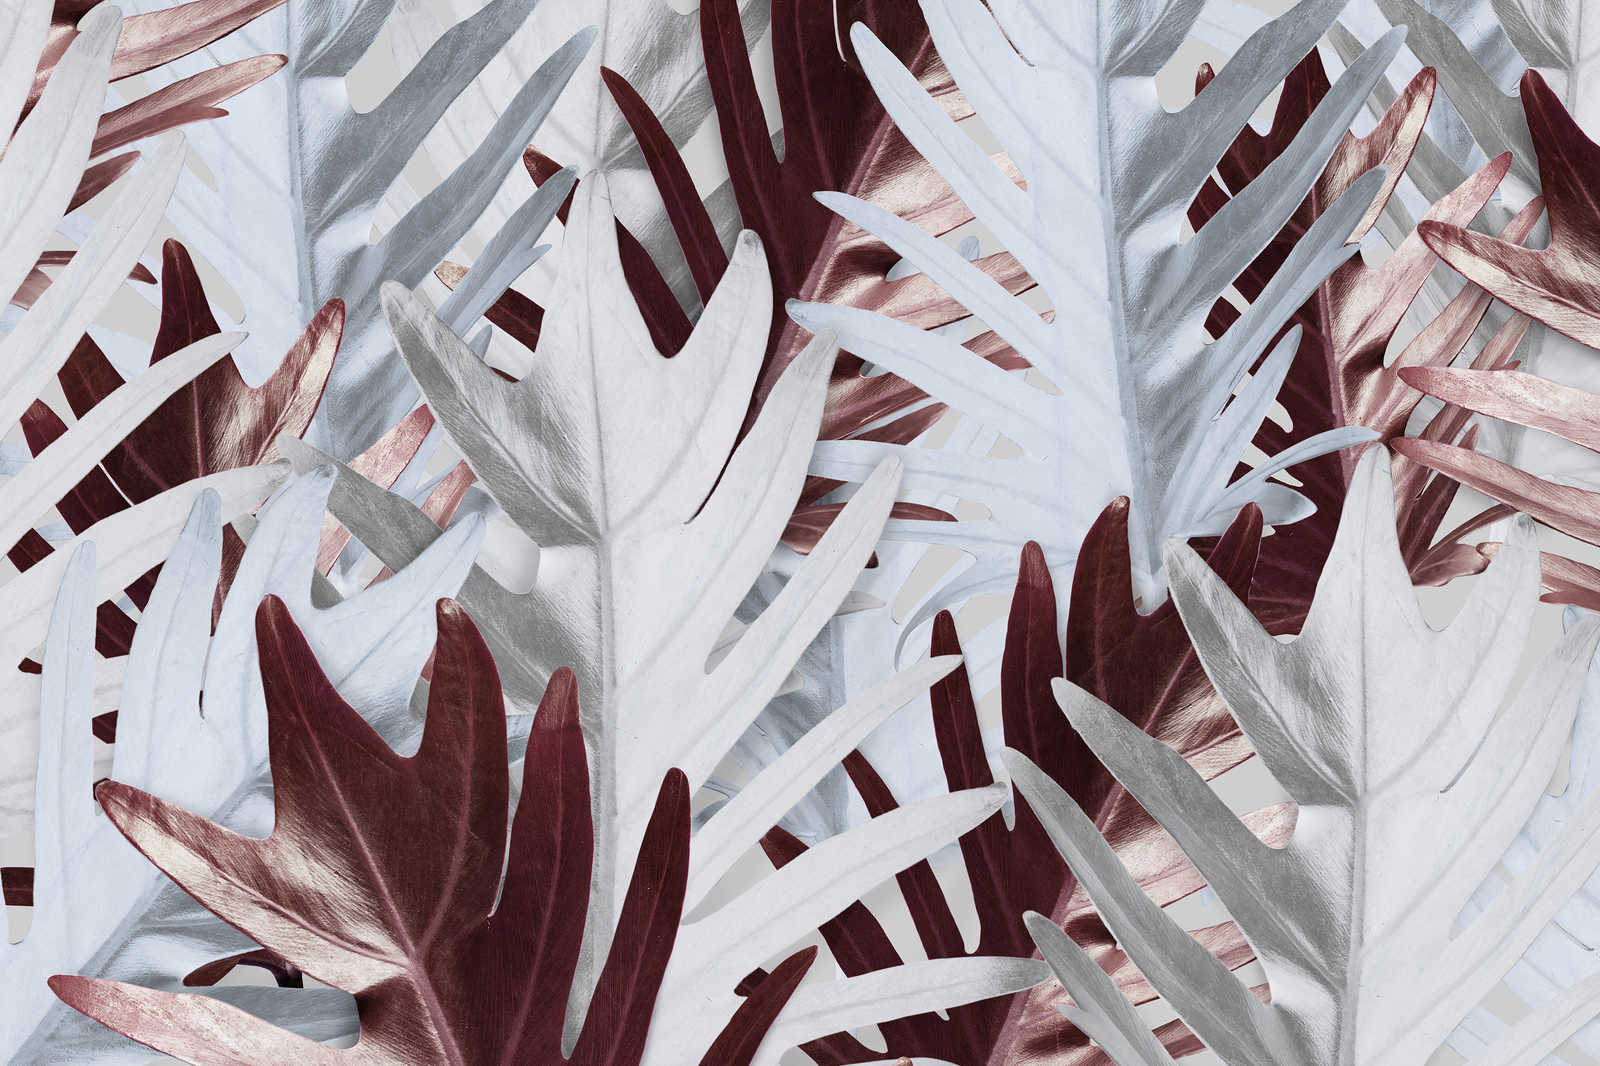             Canvas schilderij met junglebladeren in zachte tinten - 0,90 m x 0,60 m
        